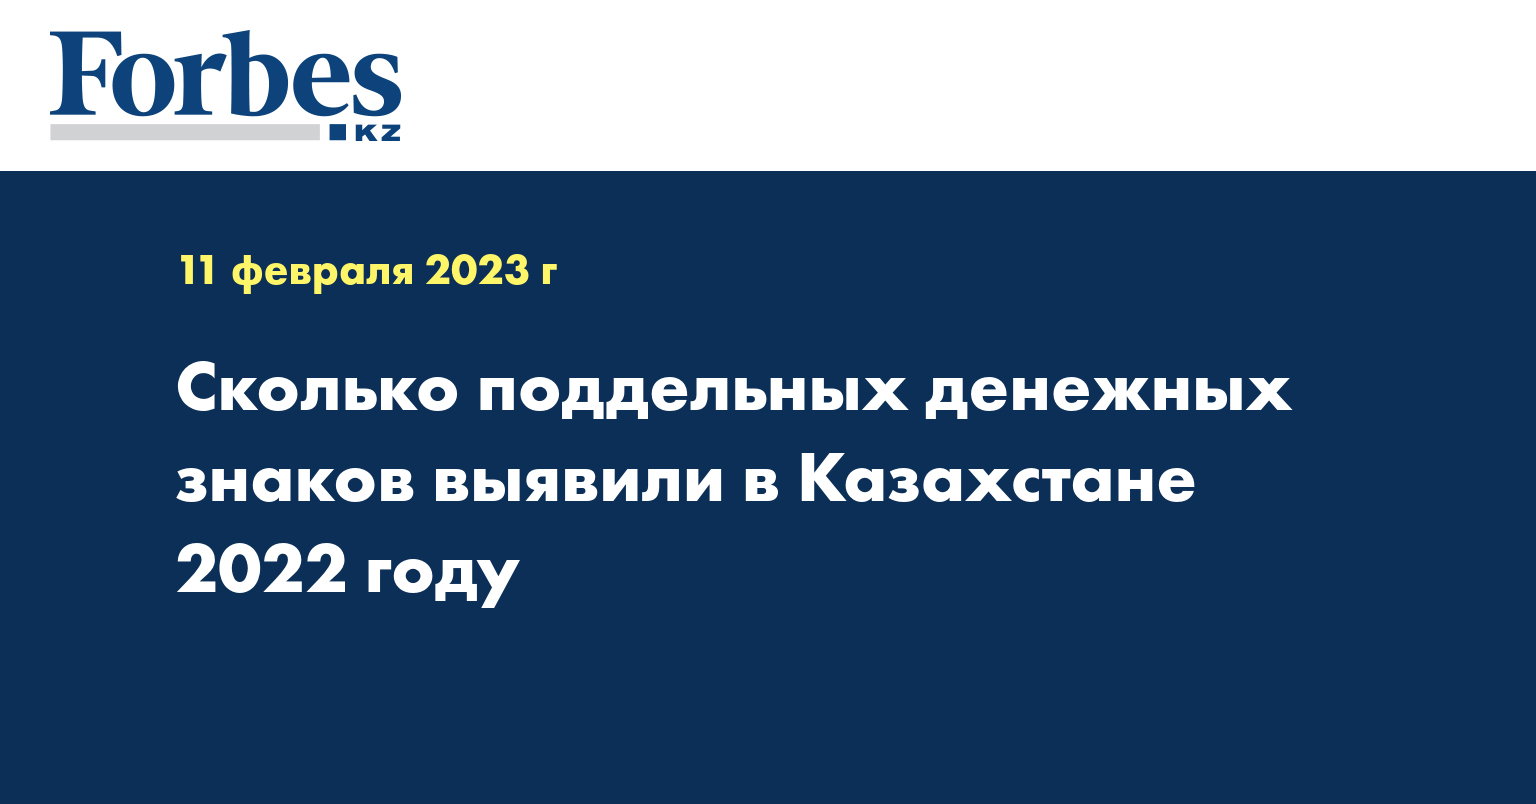 Сколько поддельных денежных знаков выявили в Казахстане 2022 году